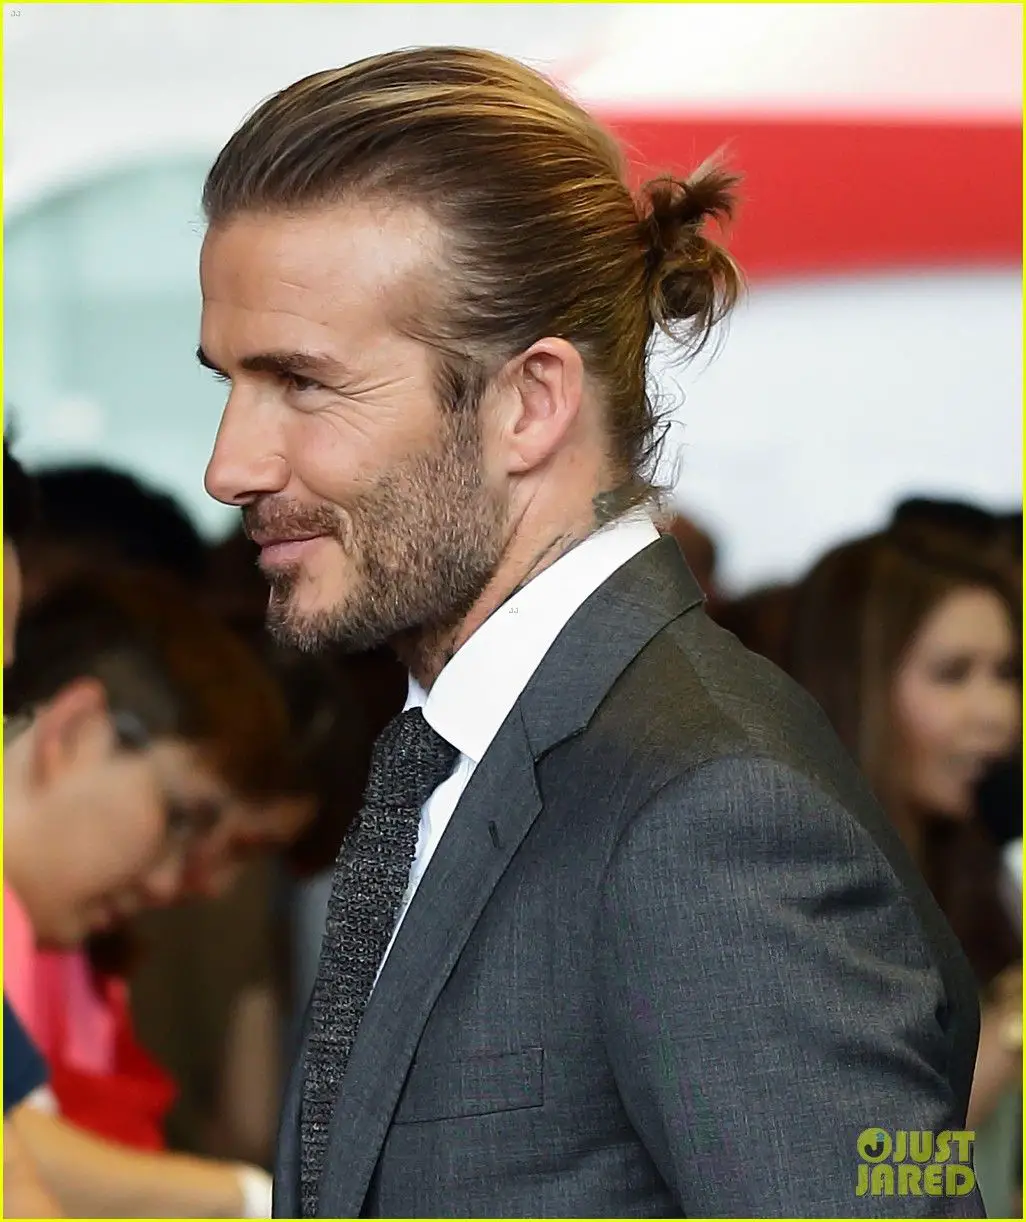 50-best-man-bun-hairstyles-trending-this-year David Beckham Man Bun